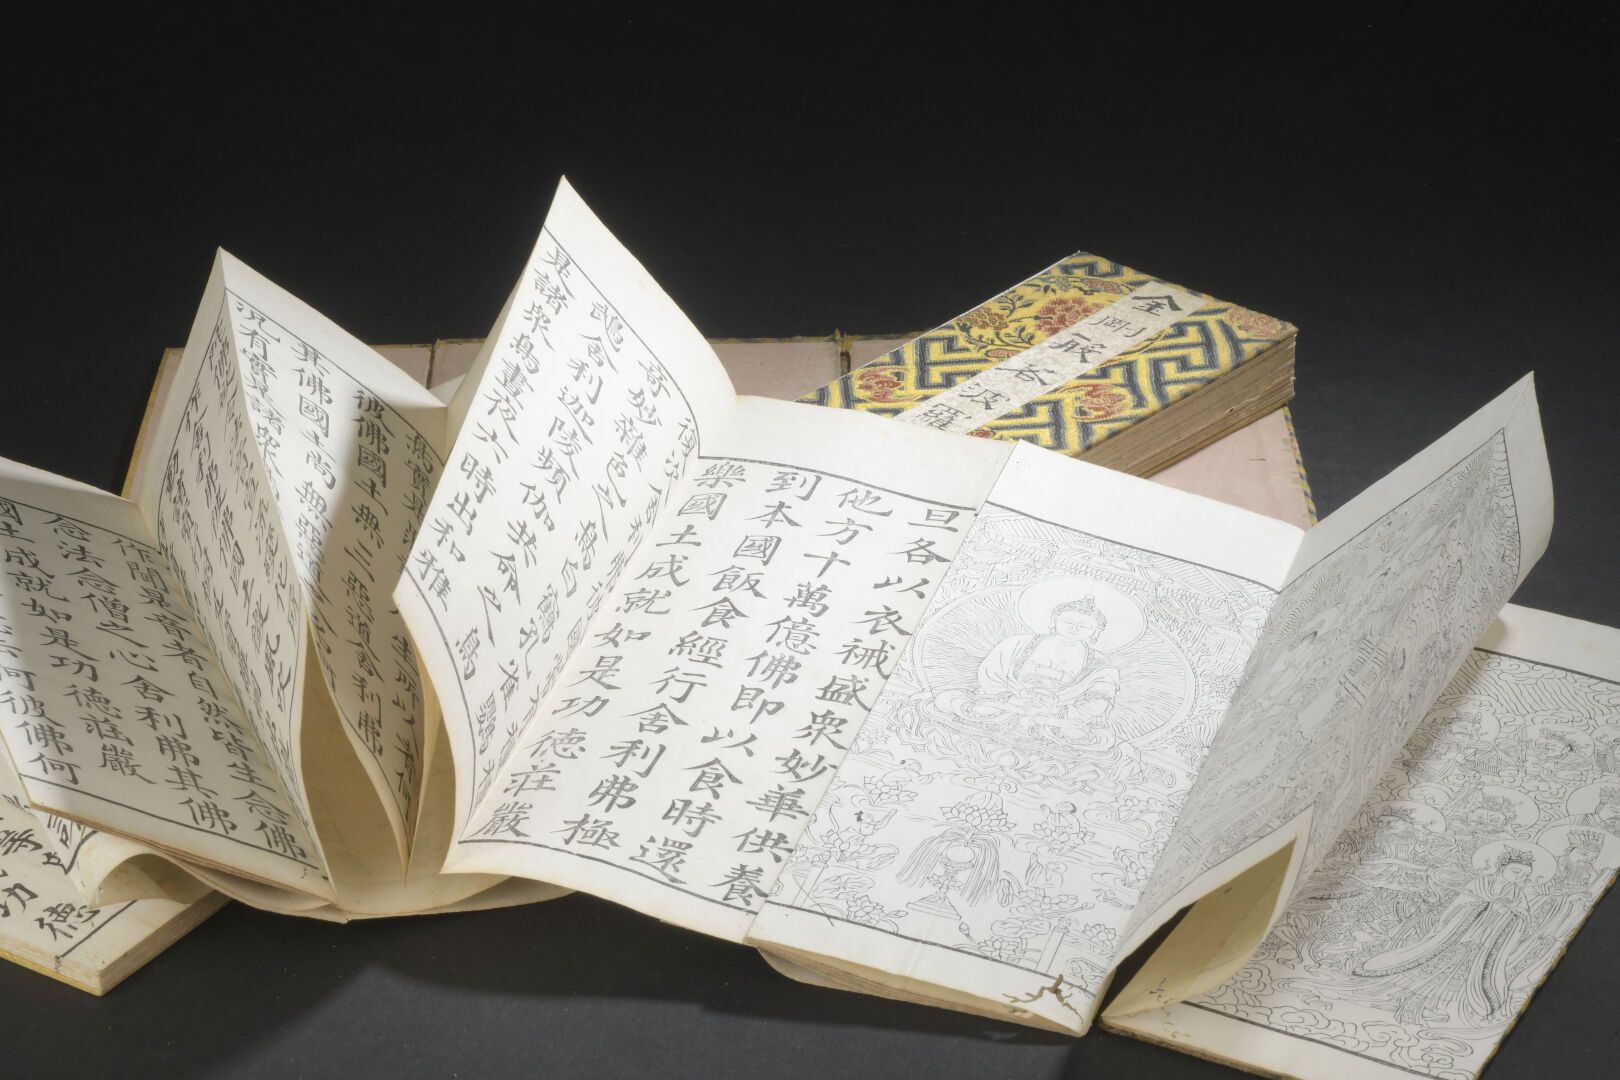 Null 金刚经和阿弥陀佛经
中国，19世纪
封面用丝织品修饰，背景是卍字形的花和蝙蝠的徽章；磨损、撕裂、污损和小虫孔。